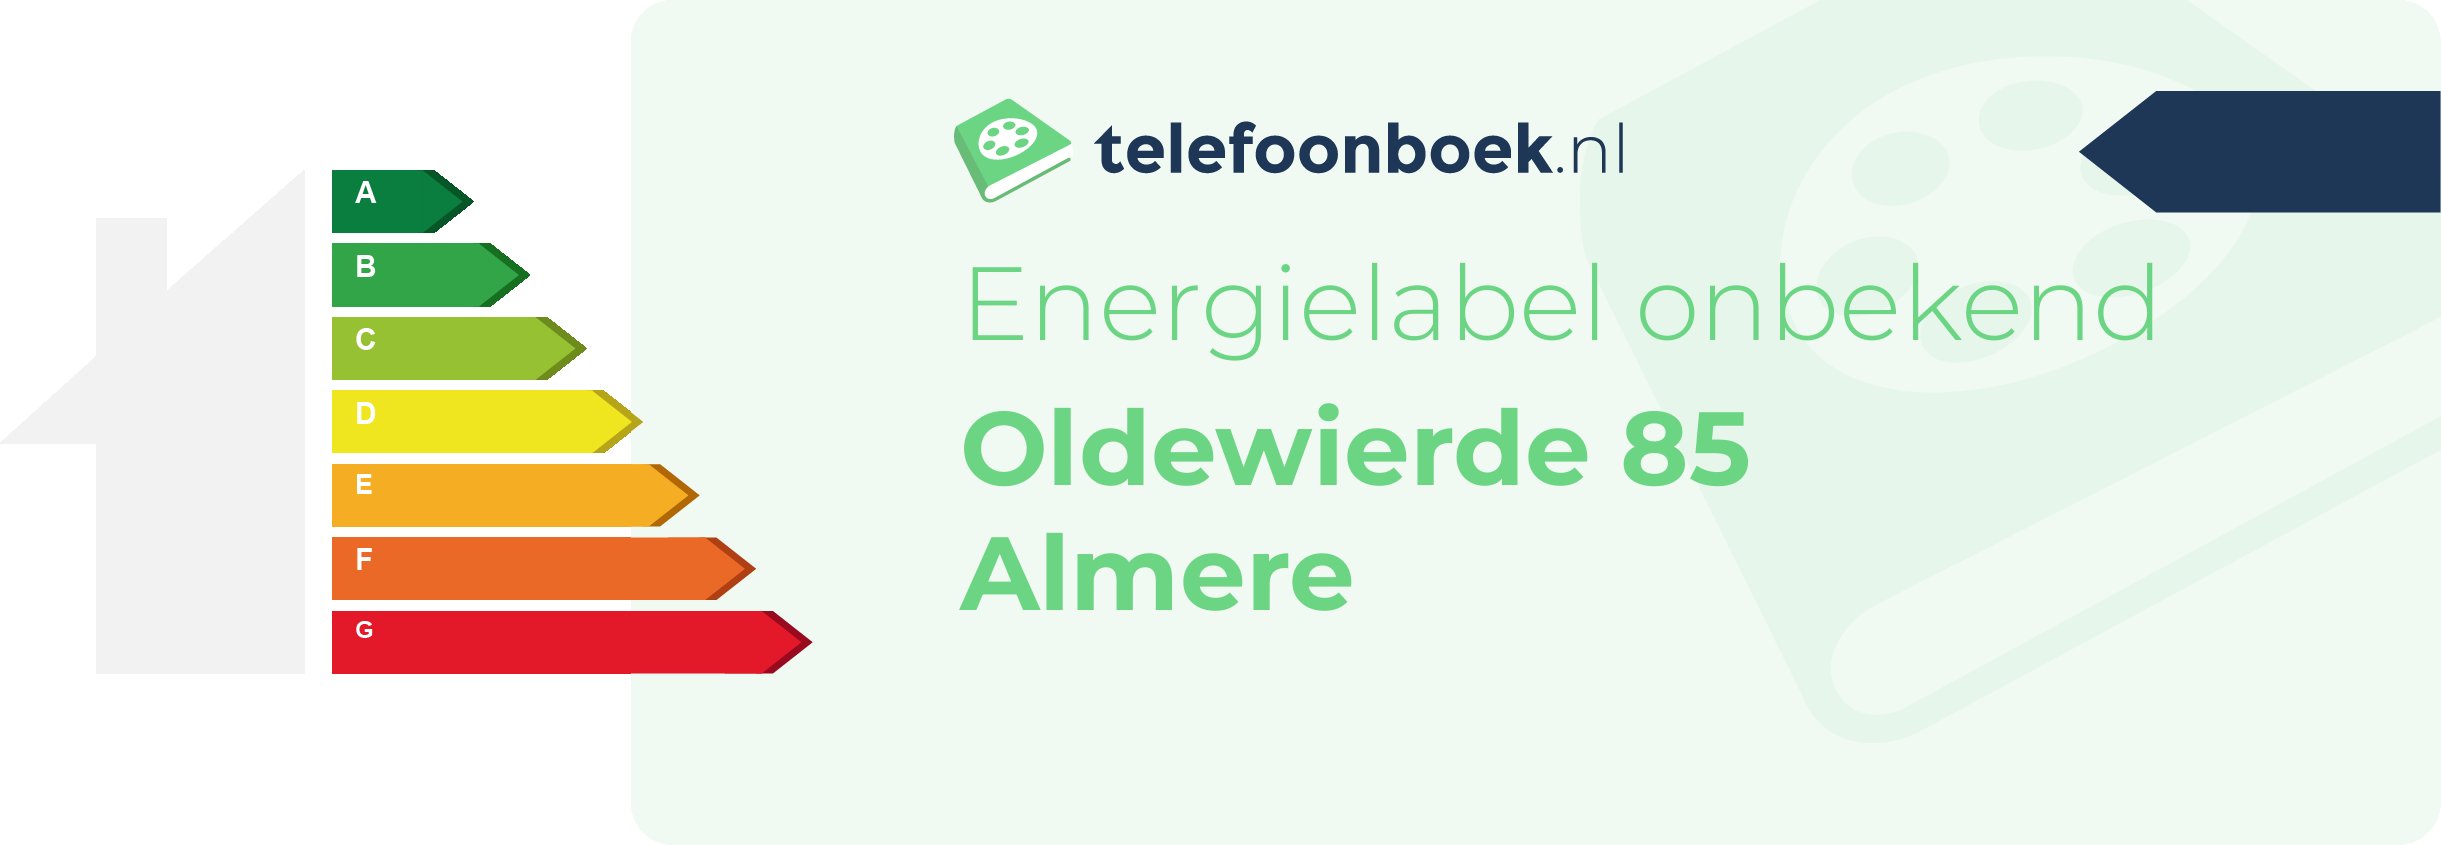 Energielabel Oldewierde 85 Almere